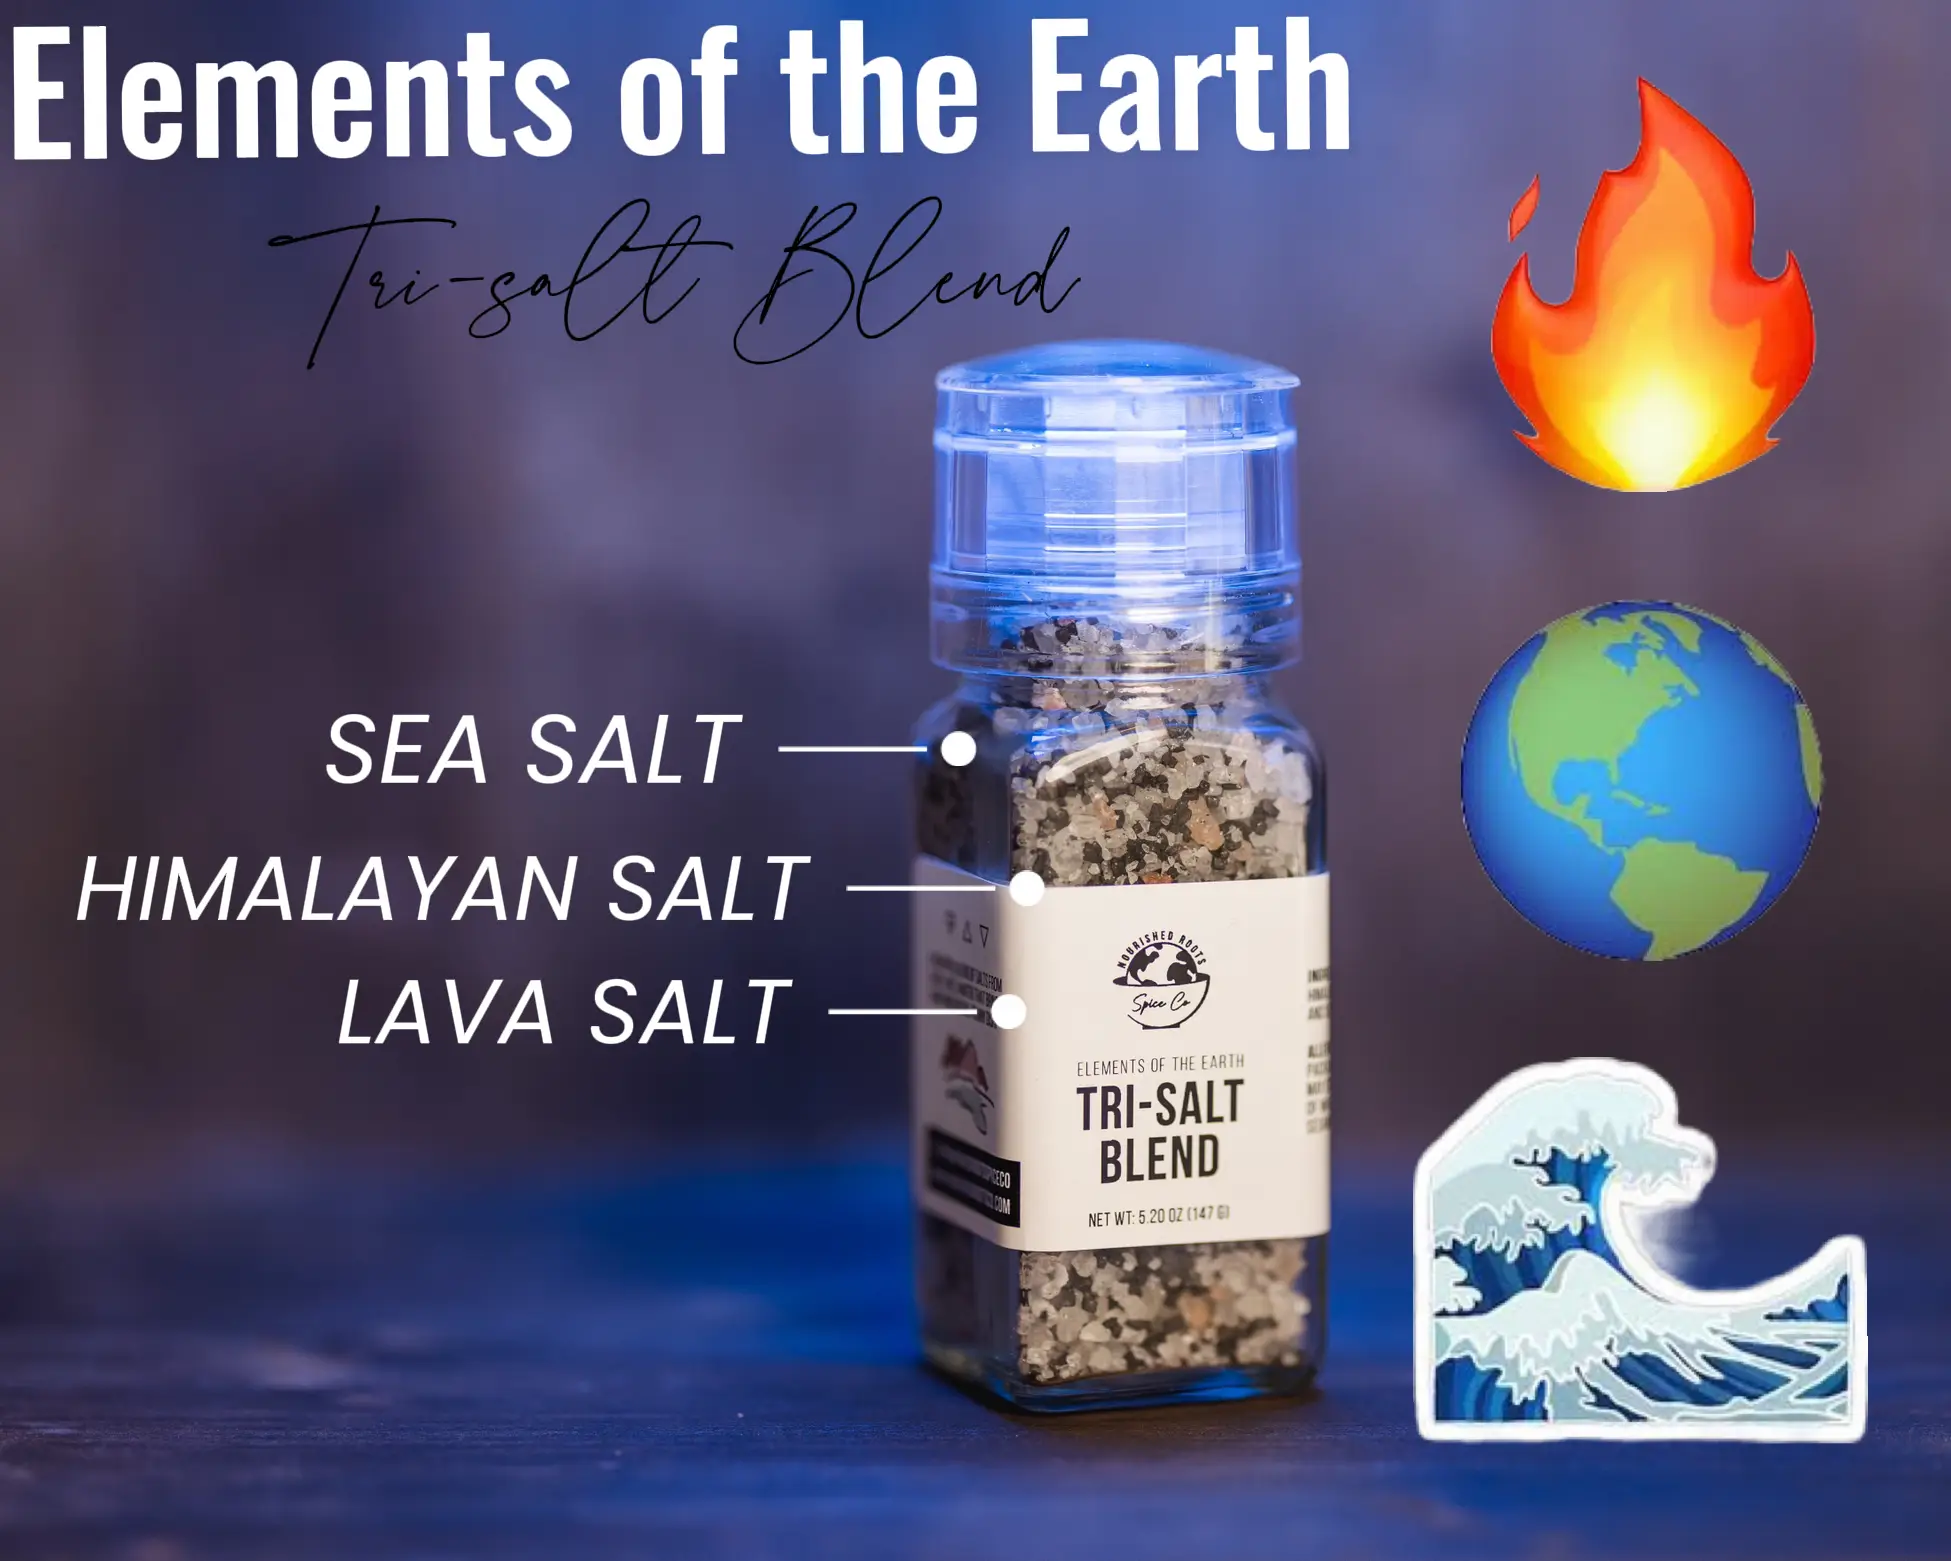 Sal Rosada Organica 100% Celtic Sea Salt 113gr